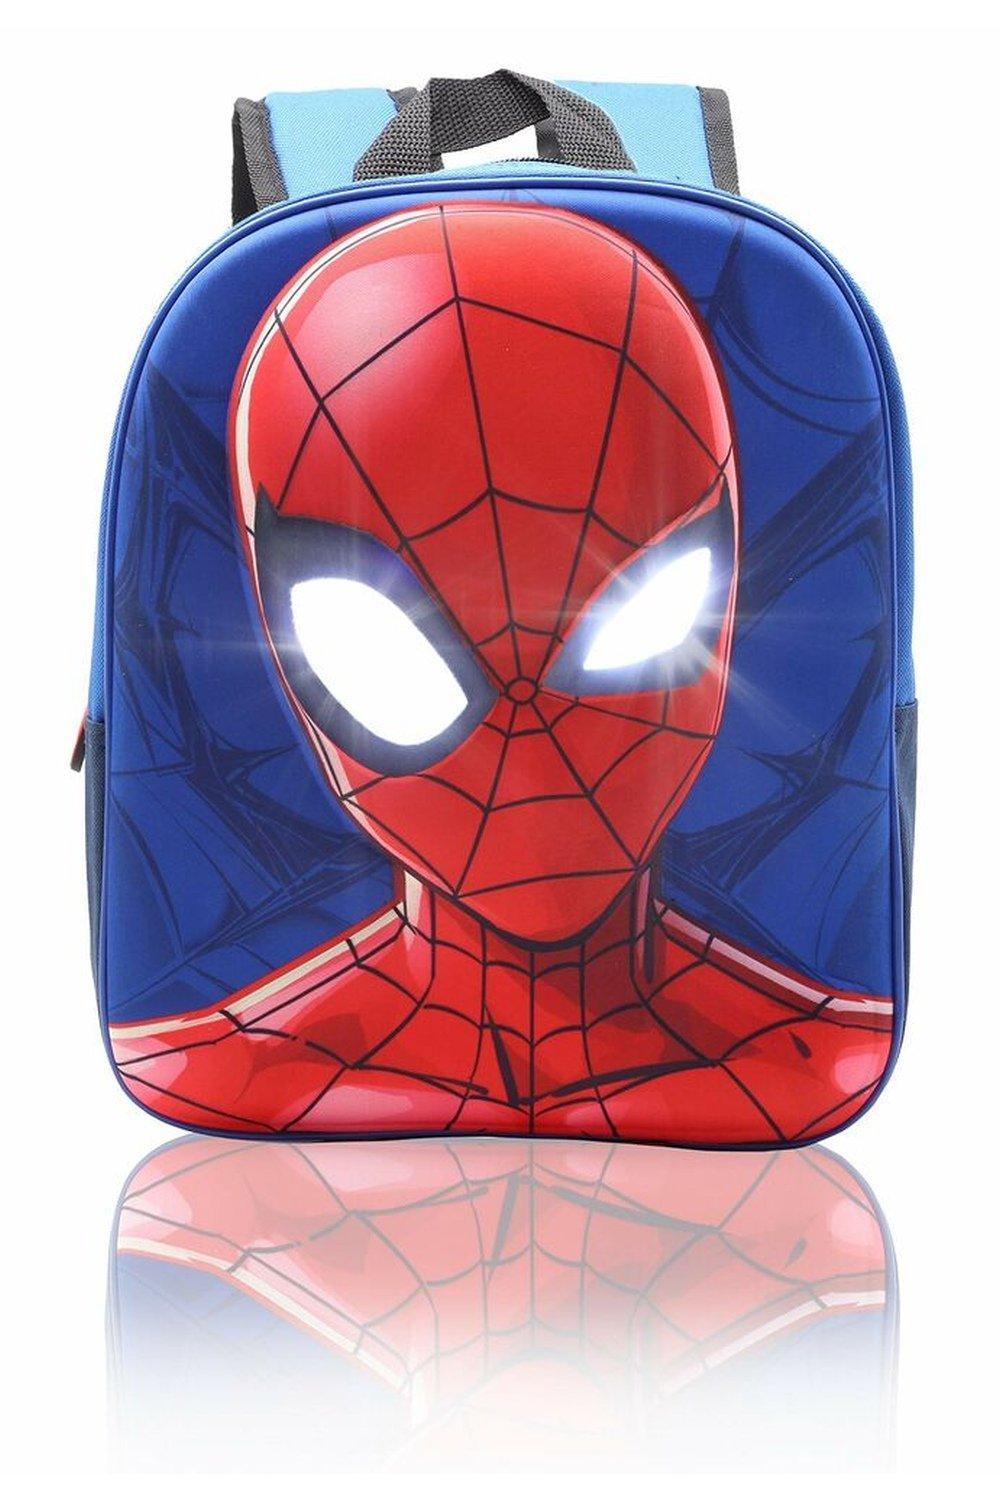 Рюкзак Человека-паука с подсветкой глаз Marvel, синий австралийский оригинальный школьный рюкзак smiggle детский рюкзак на плечо милый черный радужный детский рюкзак для девочек 16 дюймов